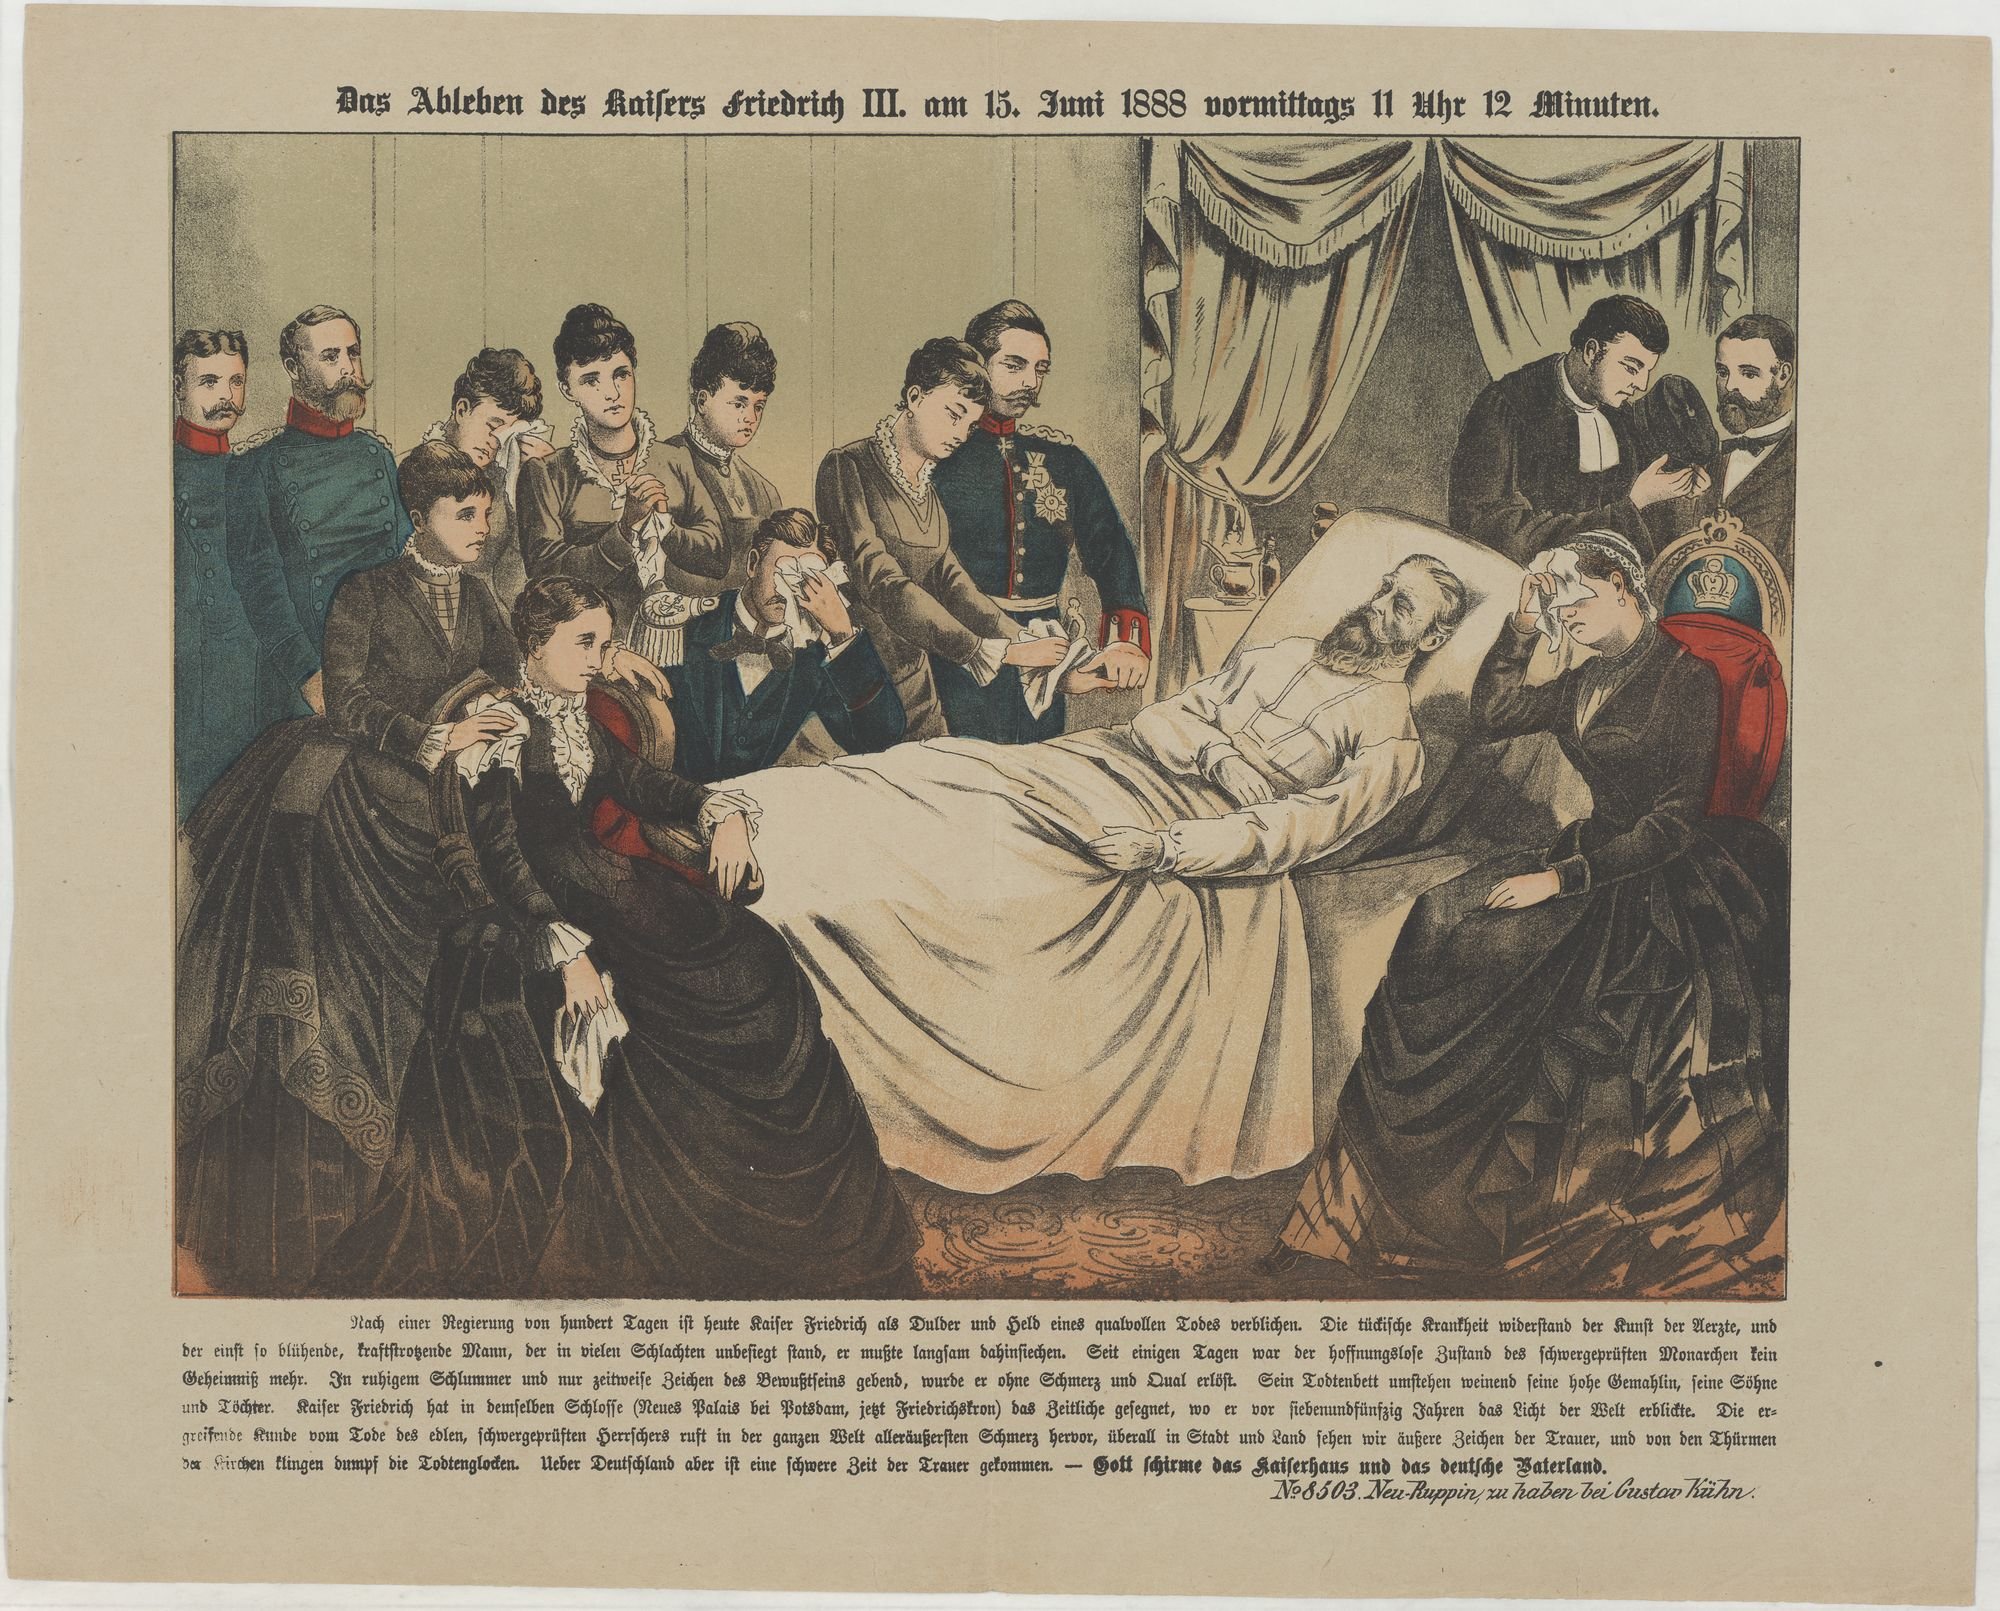 Das Ableben des Kaisers Friedrich III. am 15. Juni 1888 vormittags 11 Uhr 12 Minuten. (Kulturstiftung Sachsen-Anhalt Public Domain Mark)